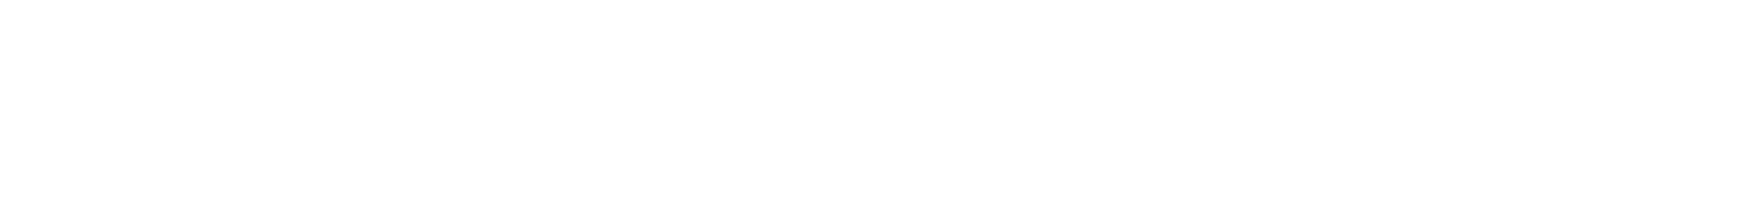 Essentialist Logo